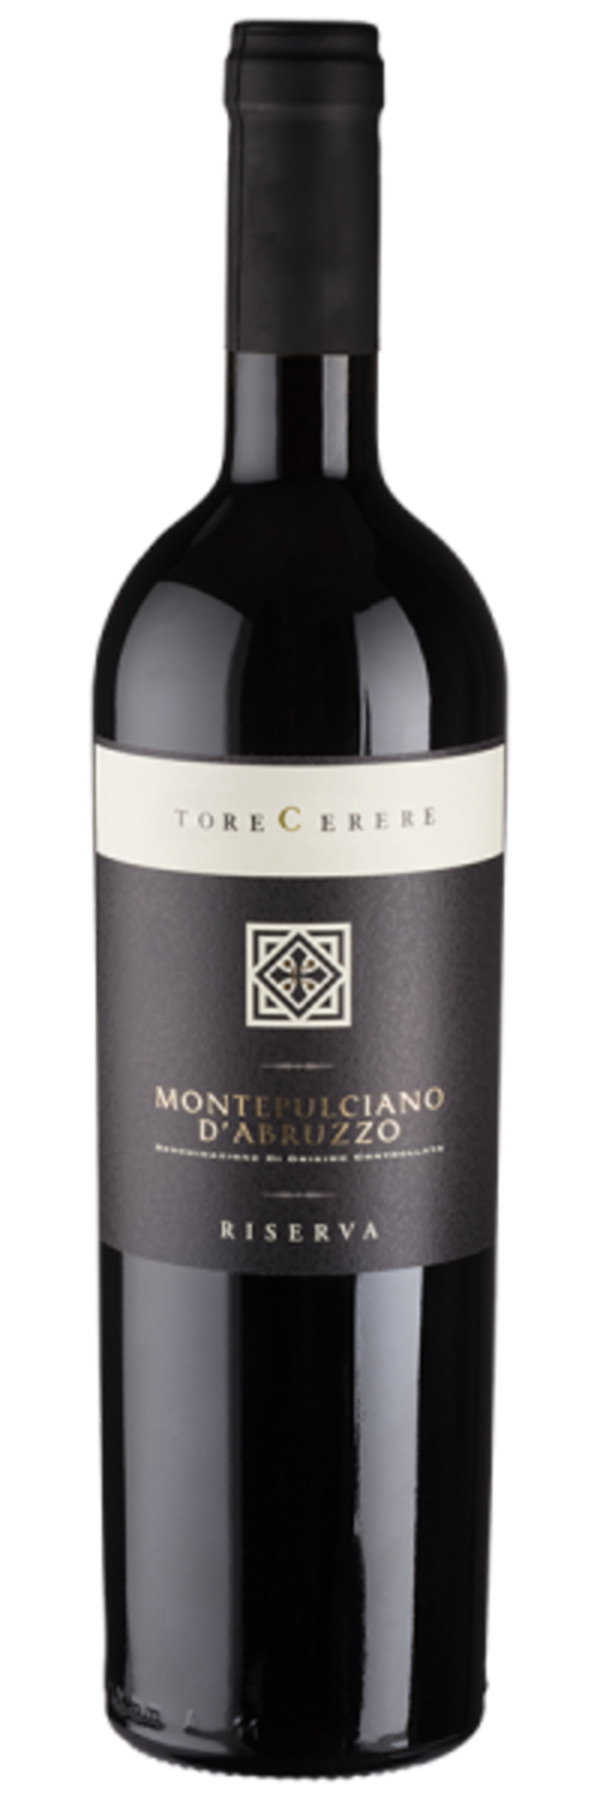 Bild 1 von Montepulciano d’Abruzzo Riserva - 2019 - Casa Vinicola Botter - Italienischer Rotwein